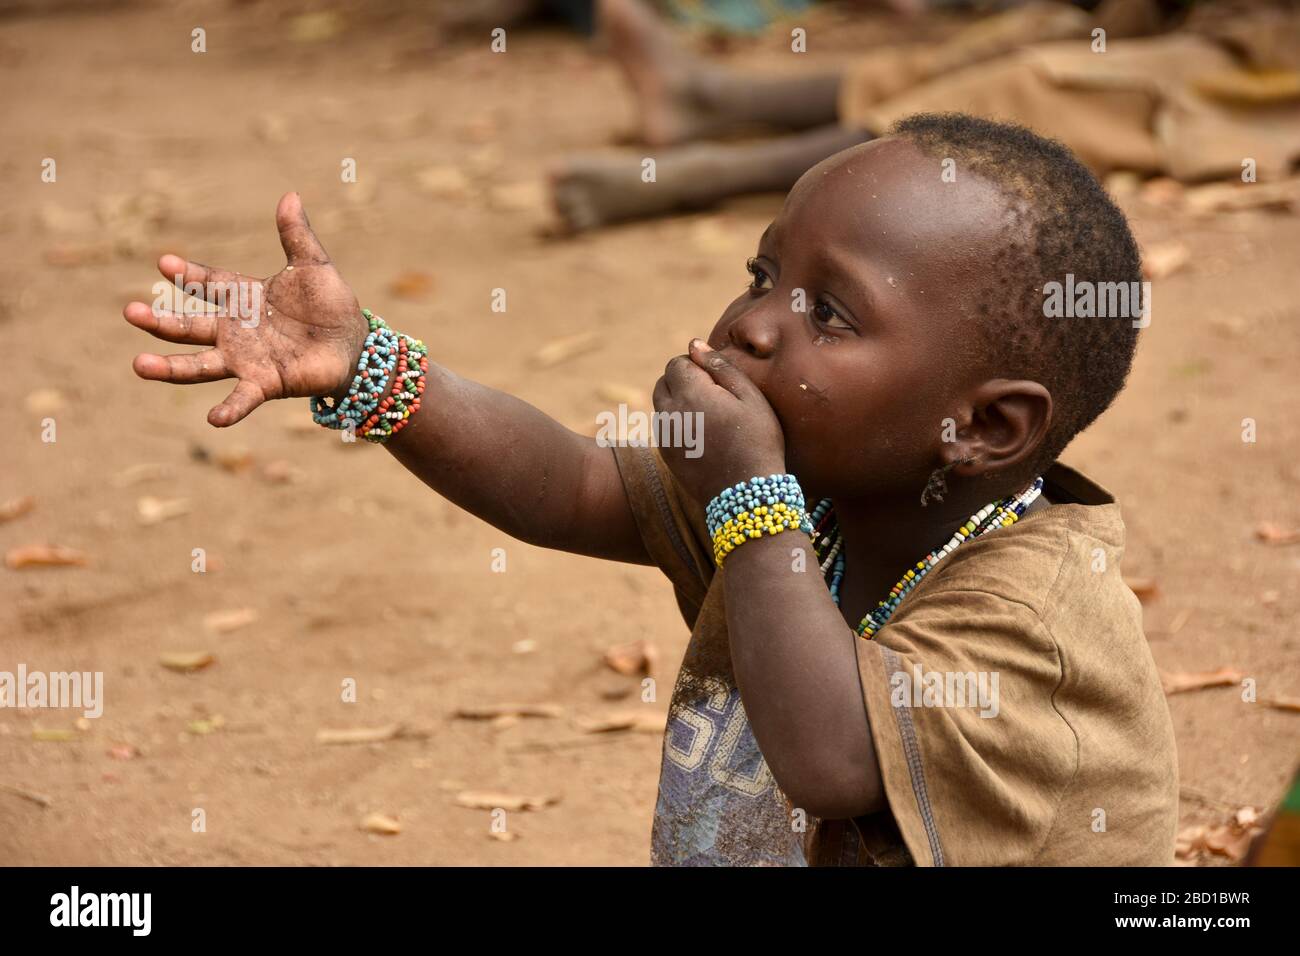 Afrika, Tansania, Lake Eyasi, junges männliches Hadza-Kind. Hadza, oder Hadzabe, sind eine indigene Ethnie im nordzentralen Tansania, die um den See lebt Stockfoto